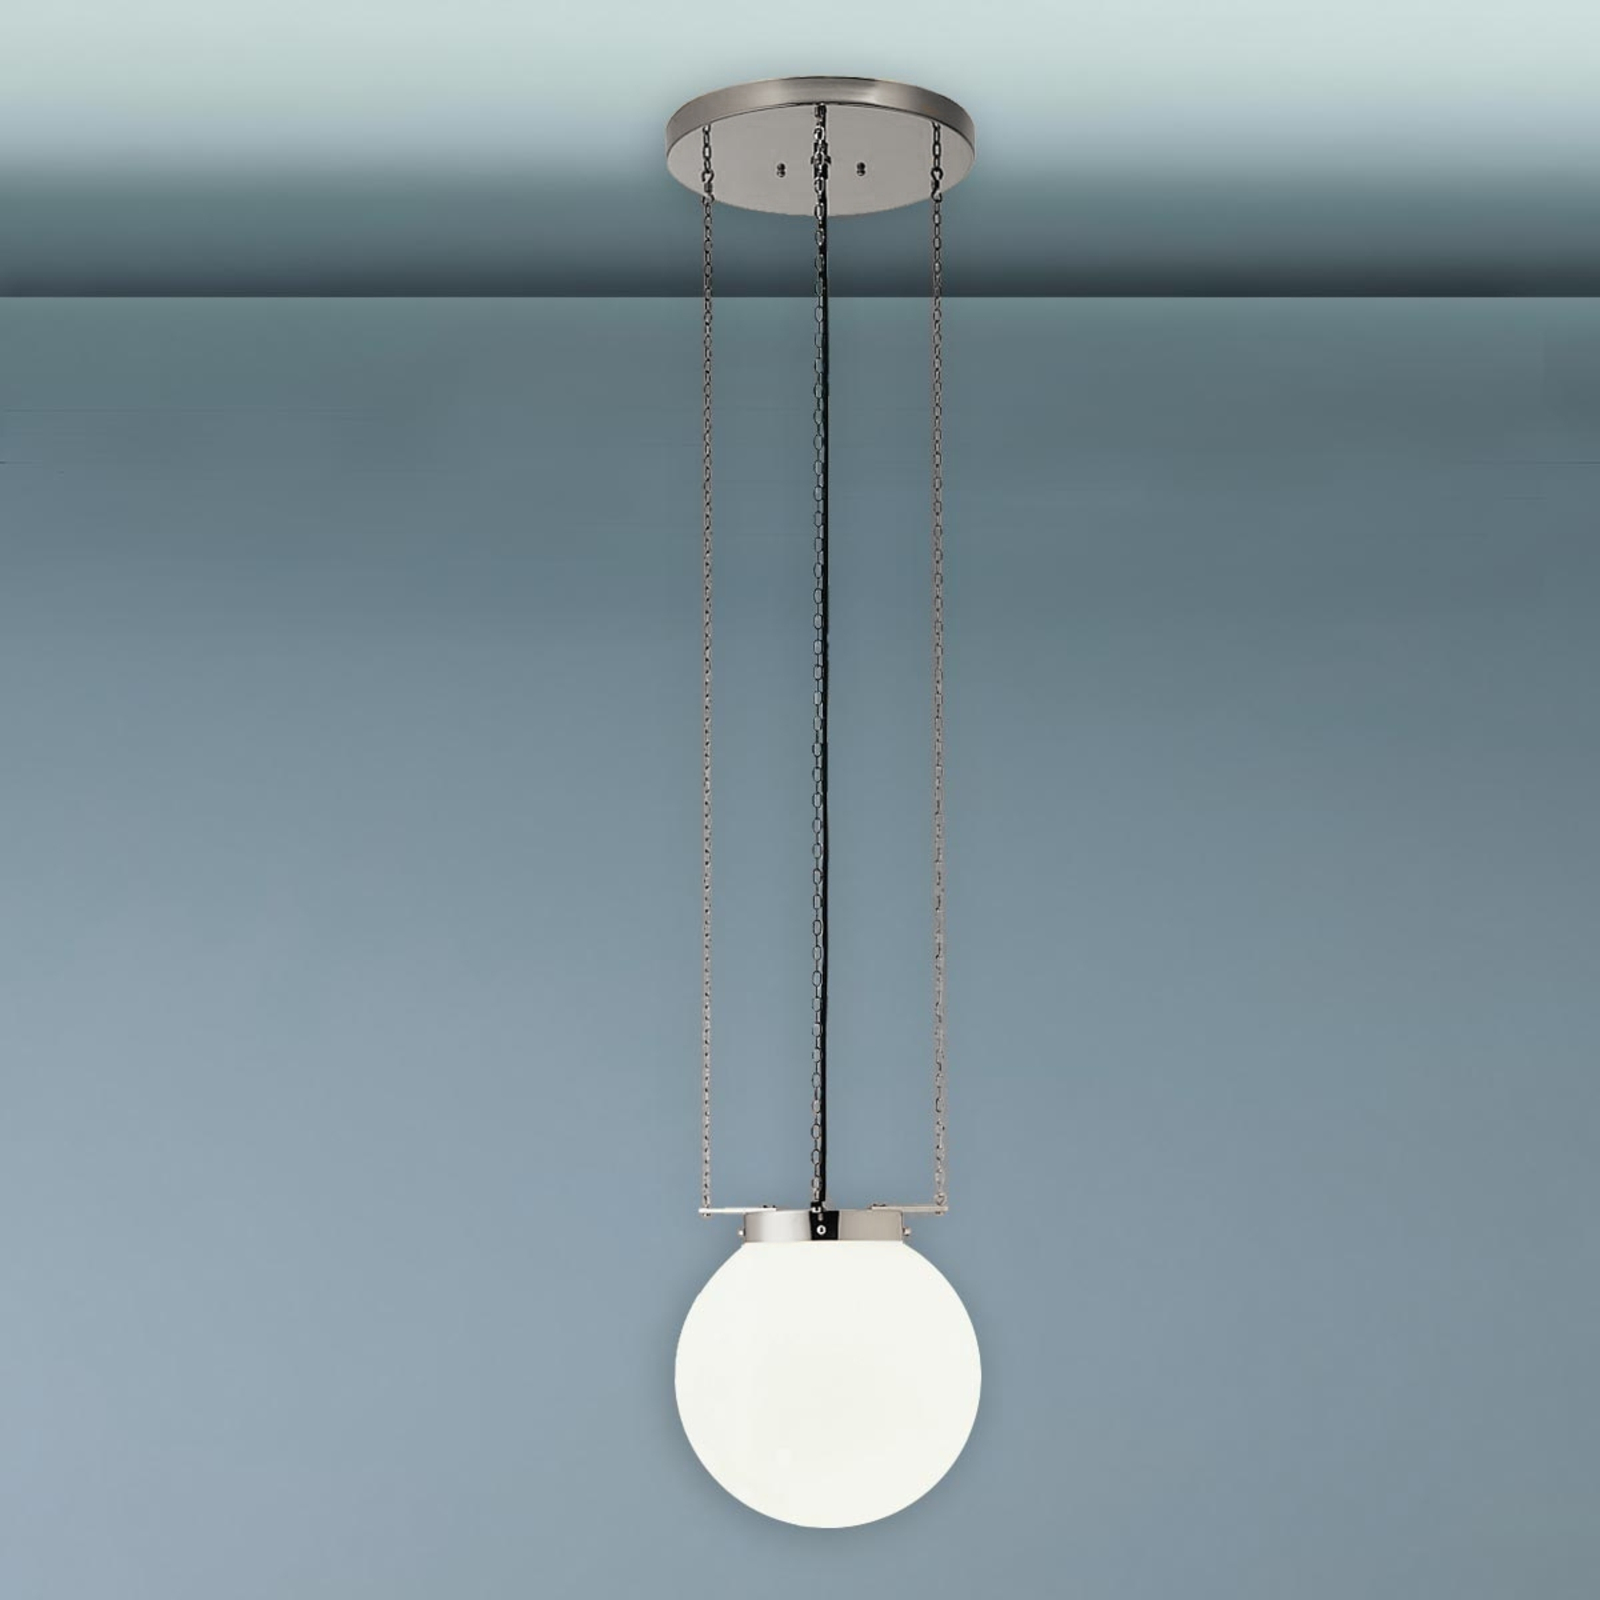 Hanglamp in Bauhaus-stijl, nikkel, 35 cm